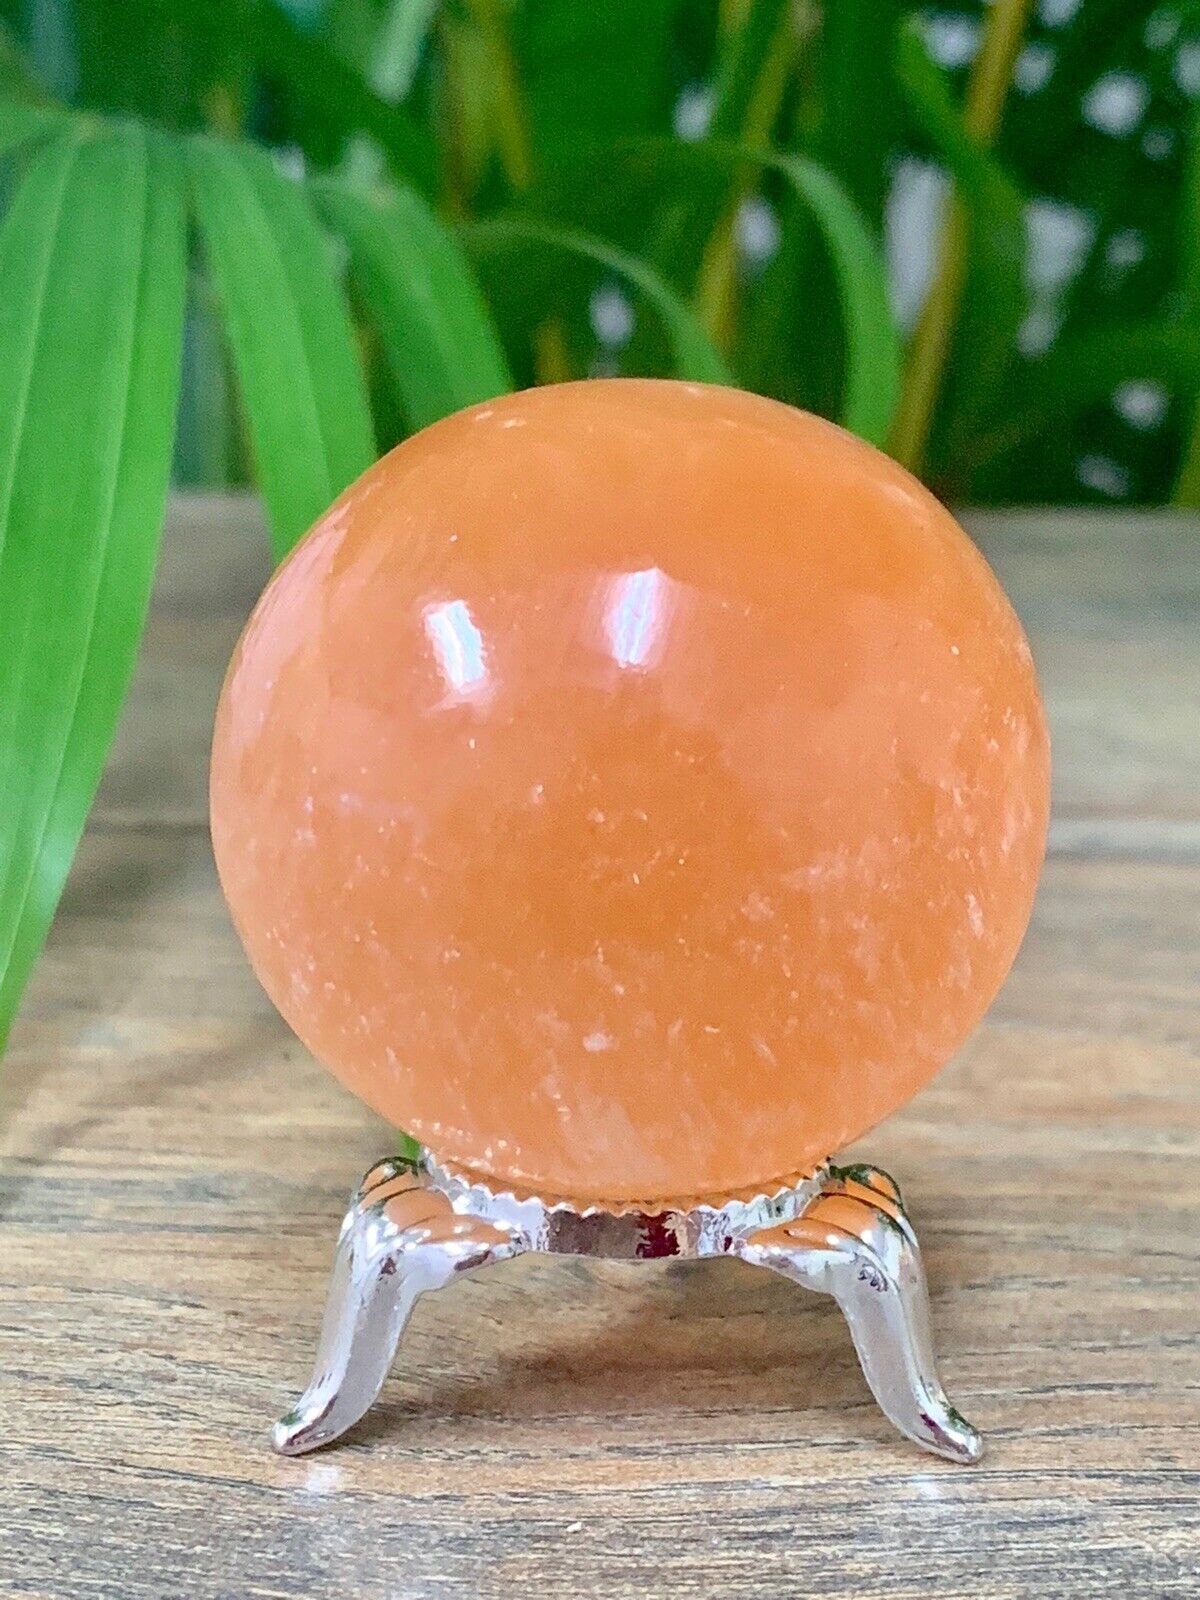 45mm Selenite Sphere Gemstone Specimen Reiki Chakra Wicca Selenite Ball Crystal